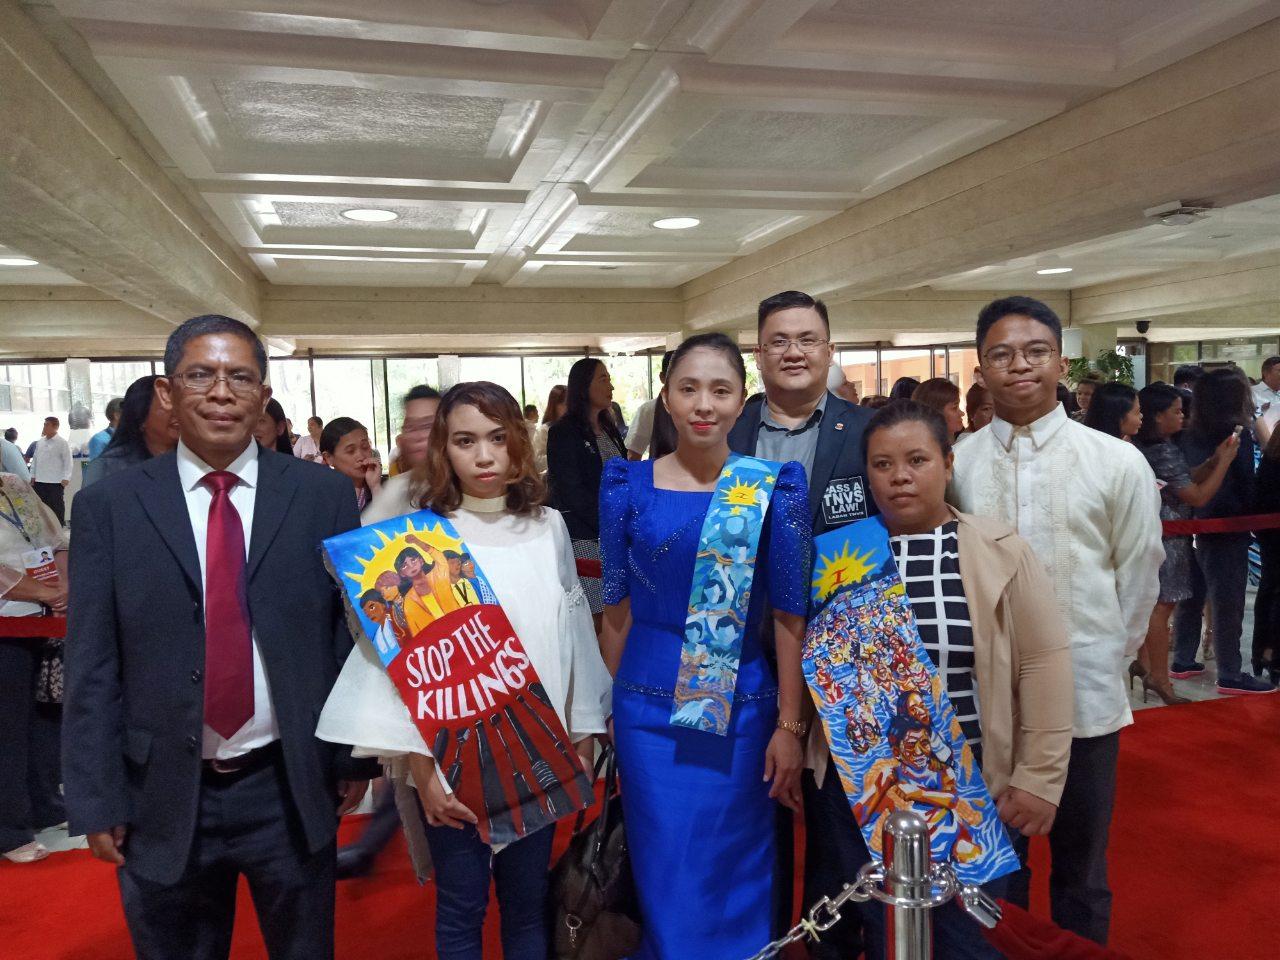 Kabataan Representative Sarah Elago and guests at the Batasang Pambansa for President Duterte's SONA on July 22, 2019.